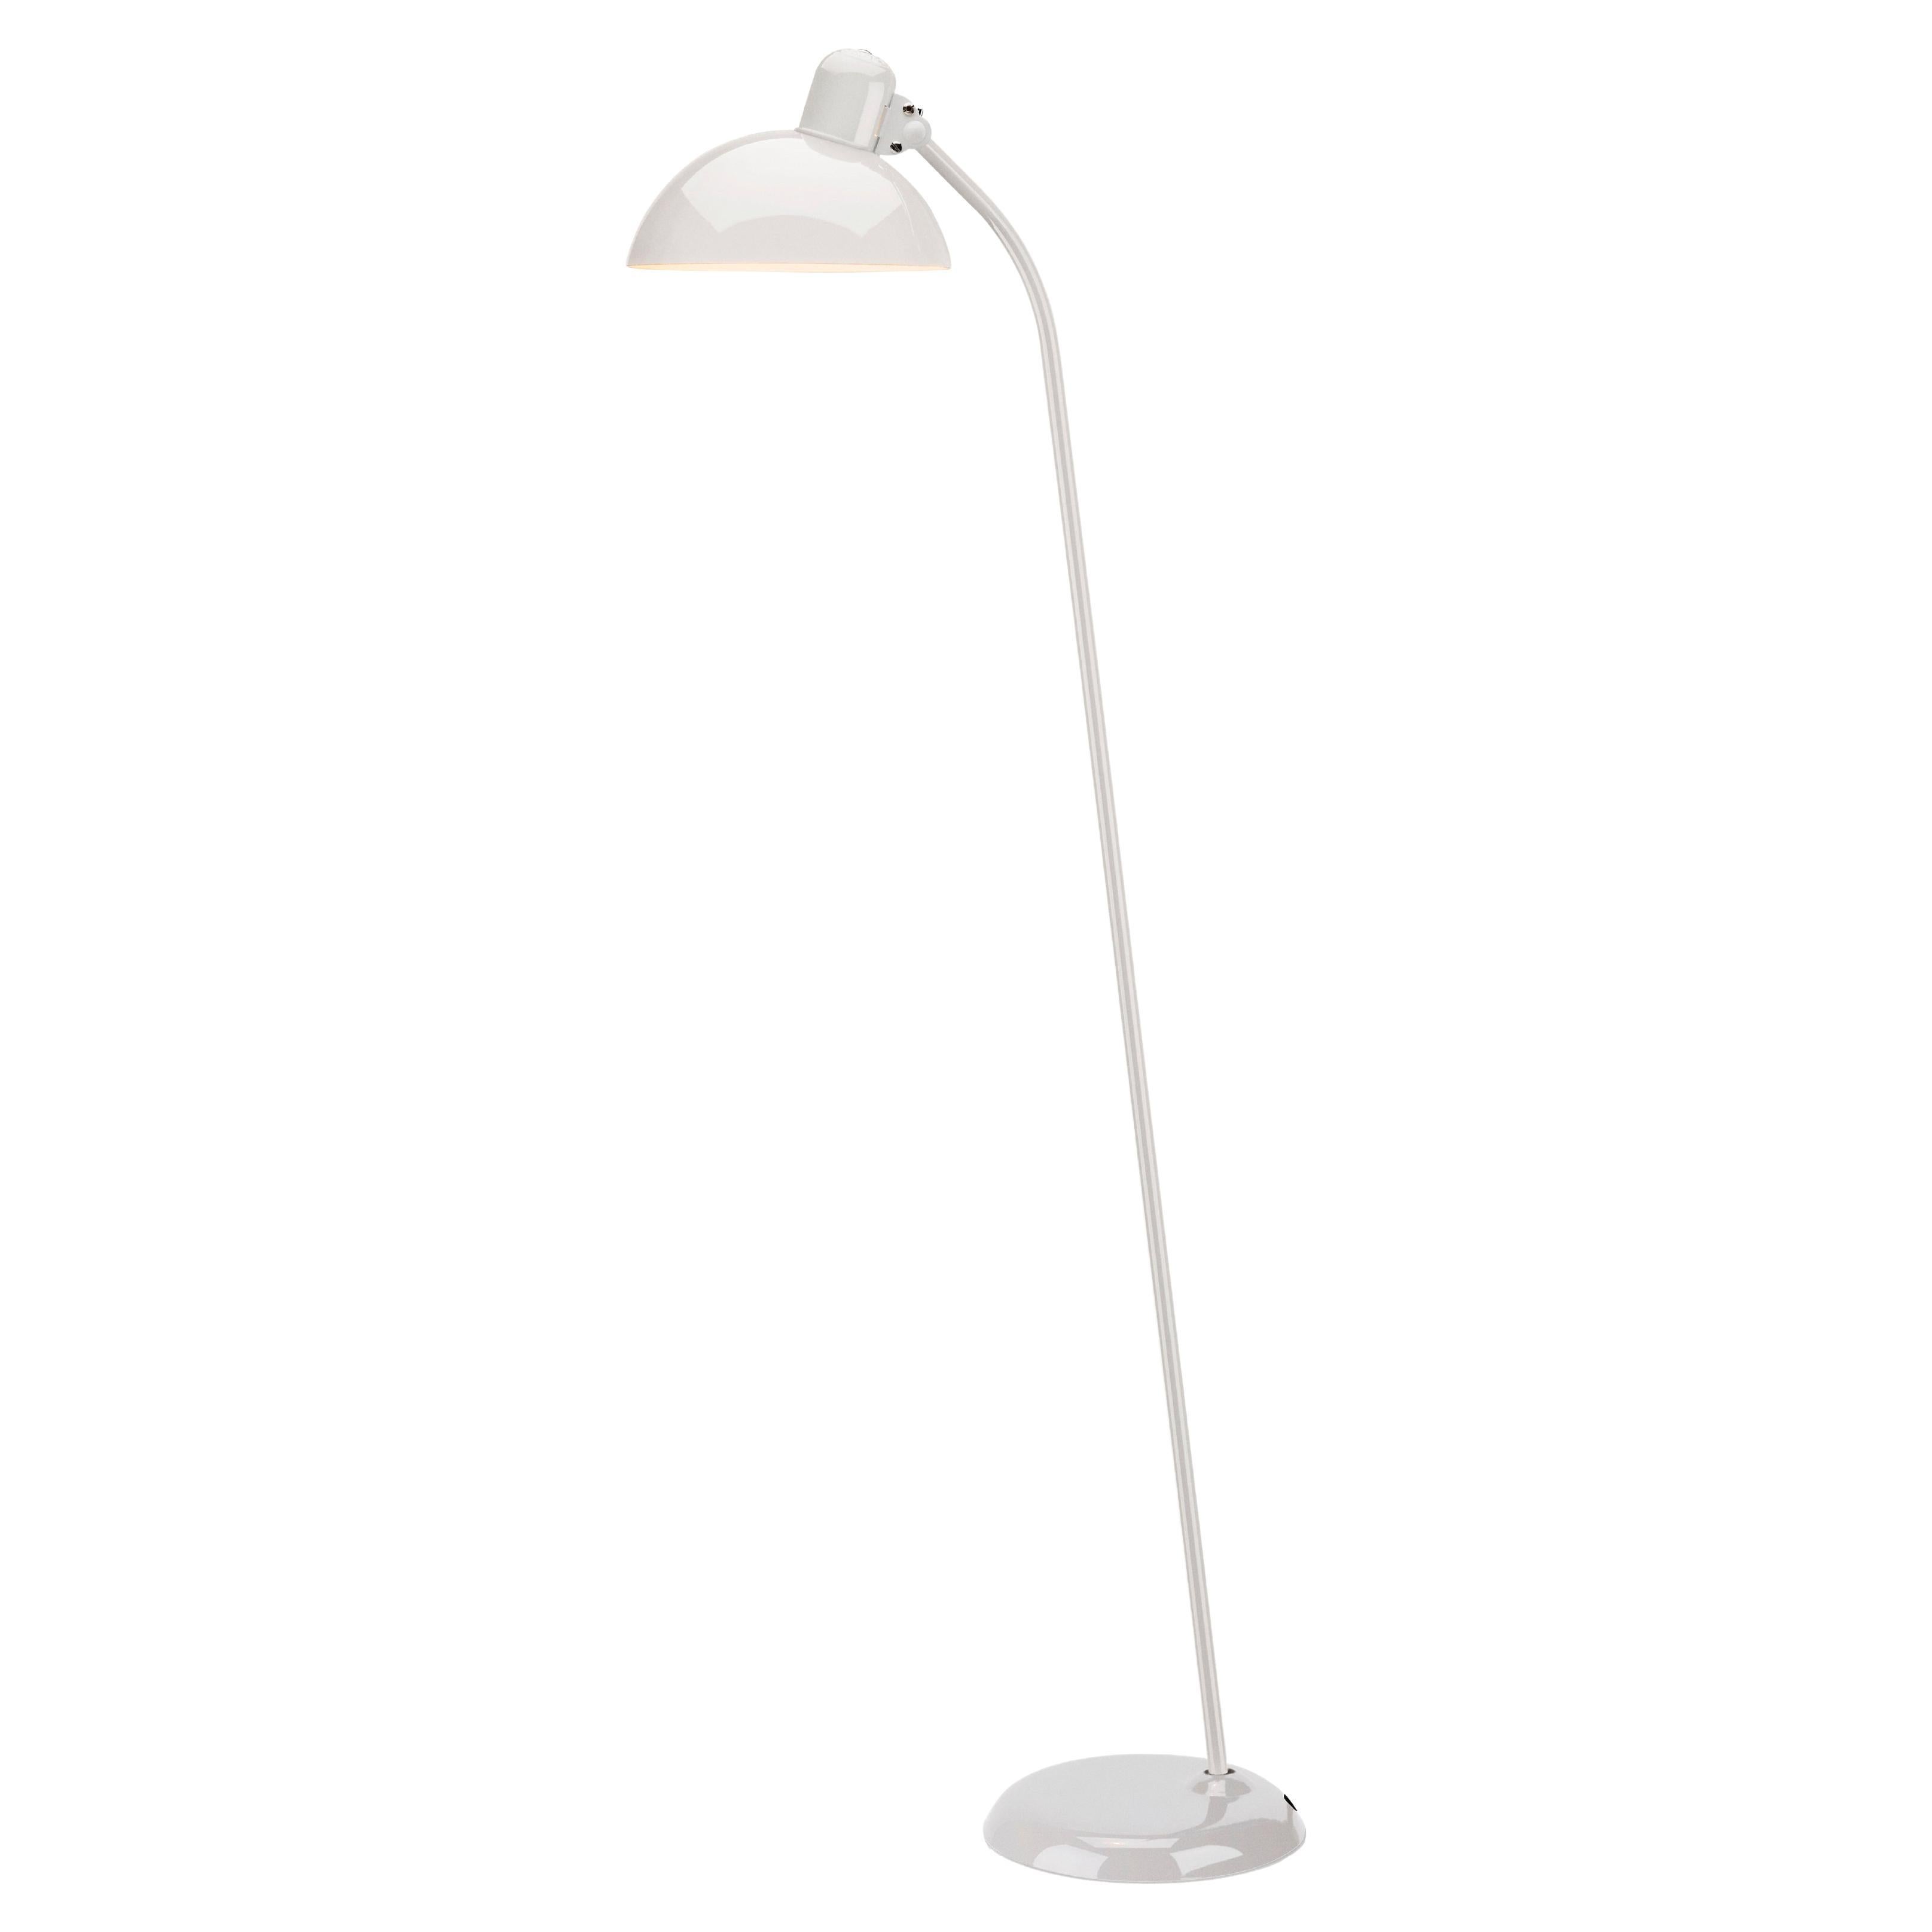 Christian Dell 'Kaiser Idell 6556-F' Floor Lamp for Fritz Hansen in Glossy White For Sale